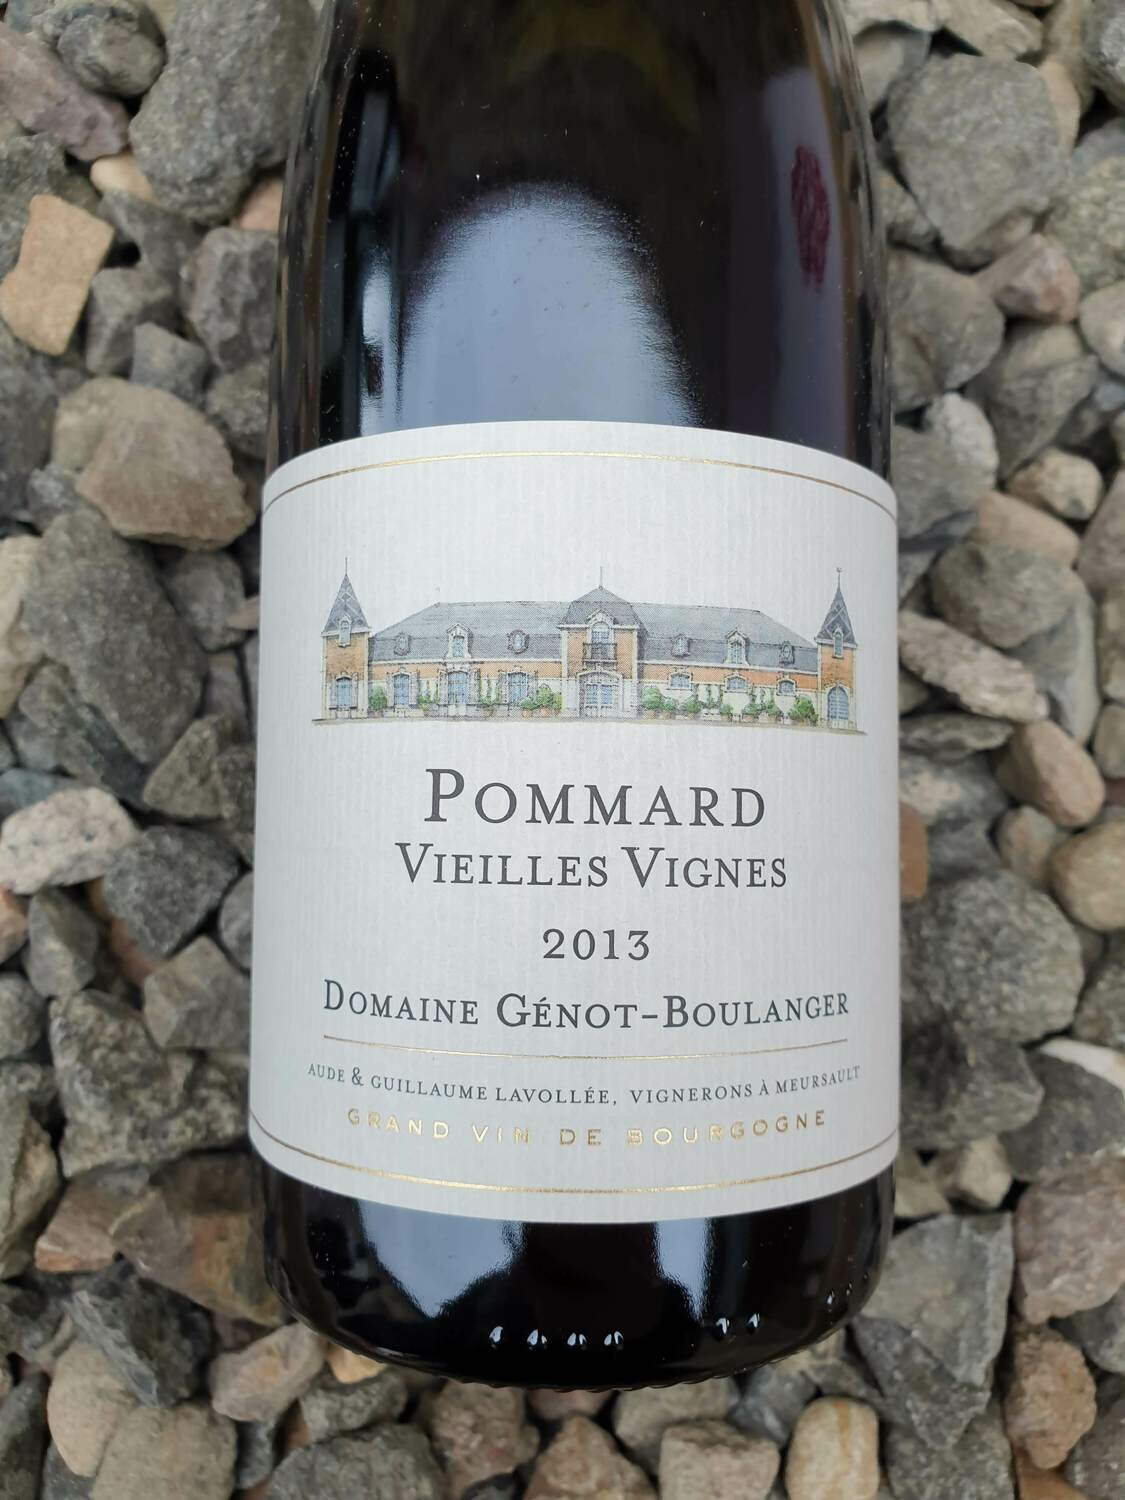 Pommard Vieilles Vignes Genot Boulanger 2013